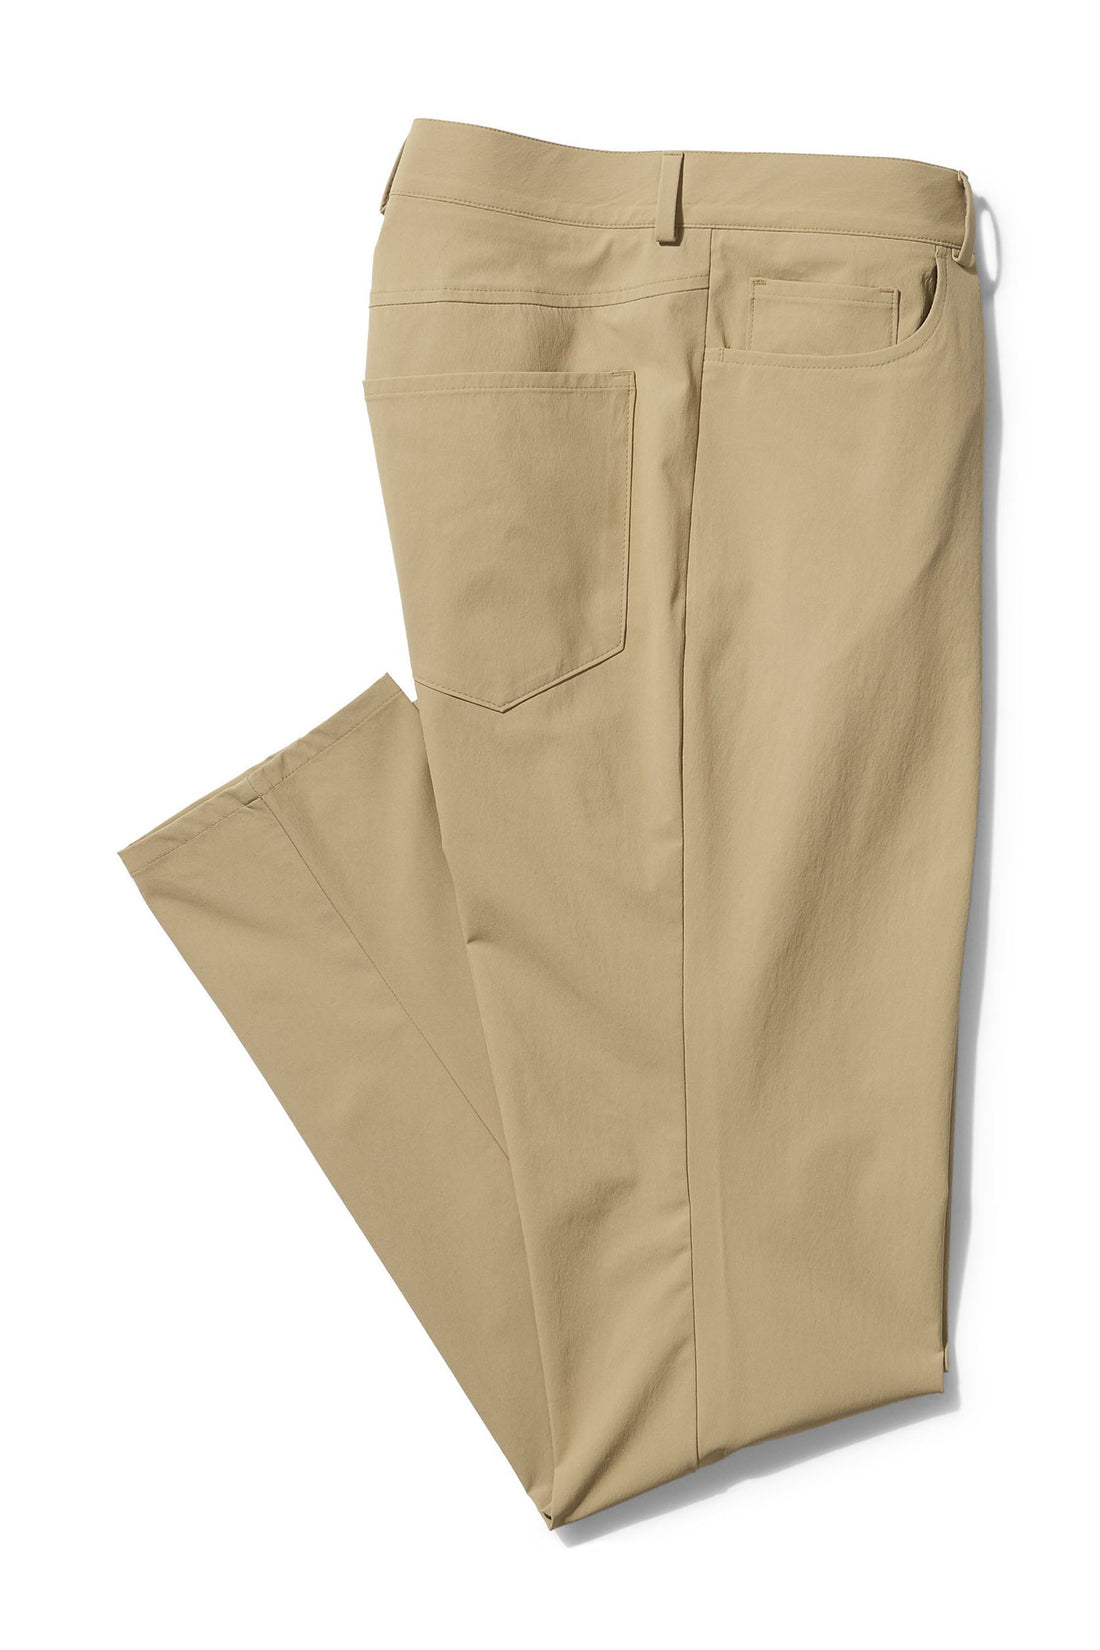 Tan "Elite-Tech" 5-Pocket Pants